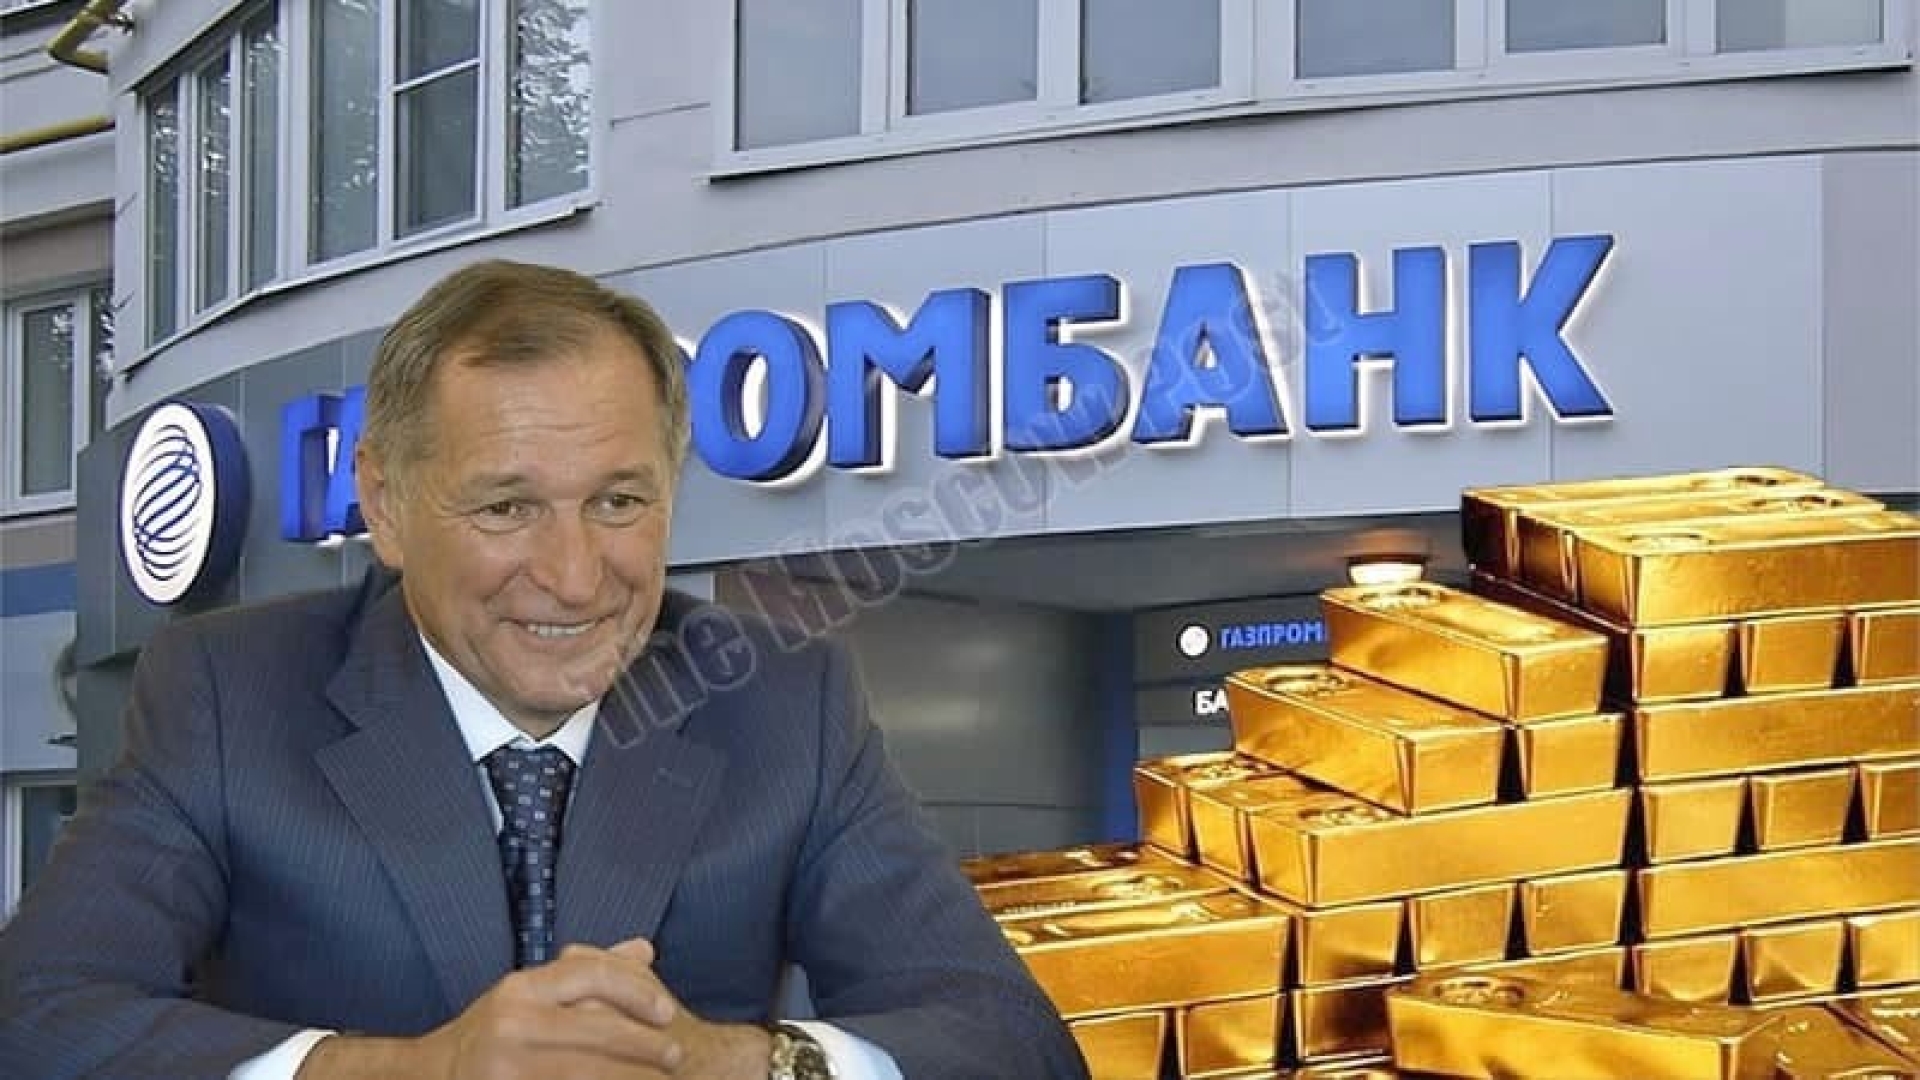 "National treasure" in Strukov's pocket?